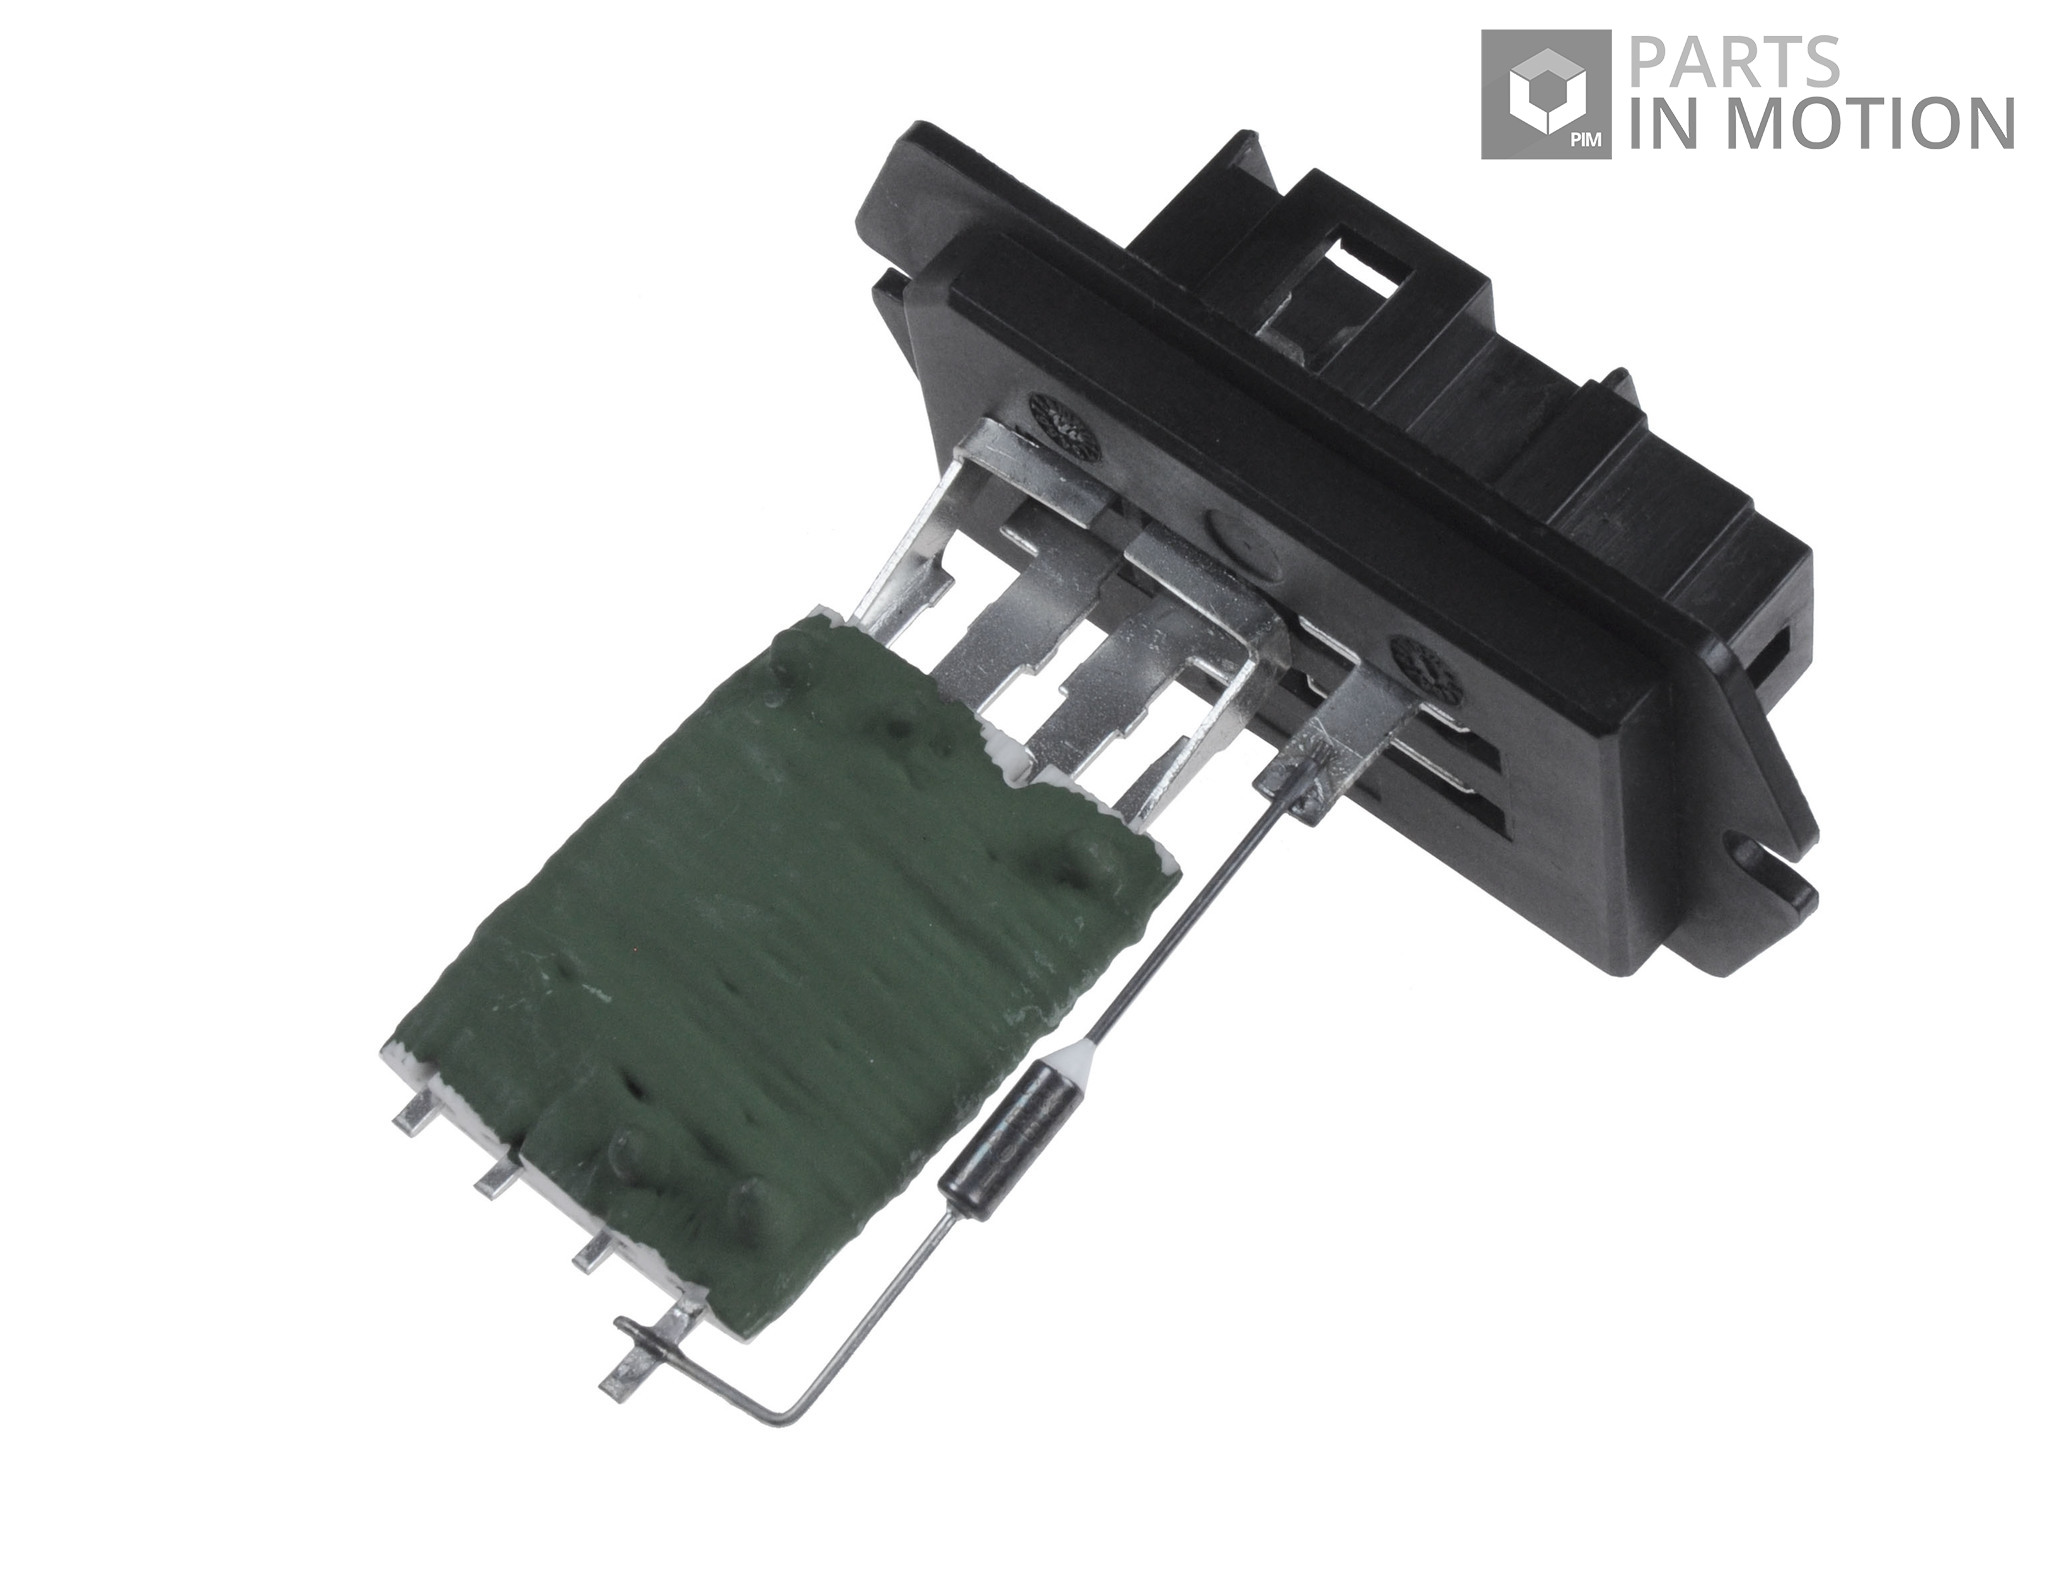 Blower Resistor fits BMW X5 E53 3.0 3.0D 00 to 06 Regulator Rheostat Heater